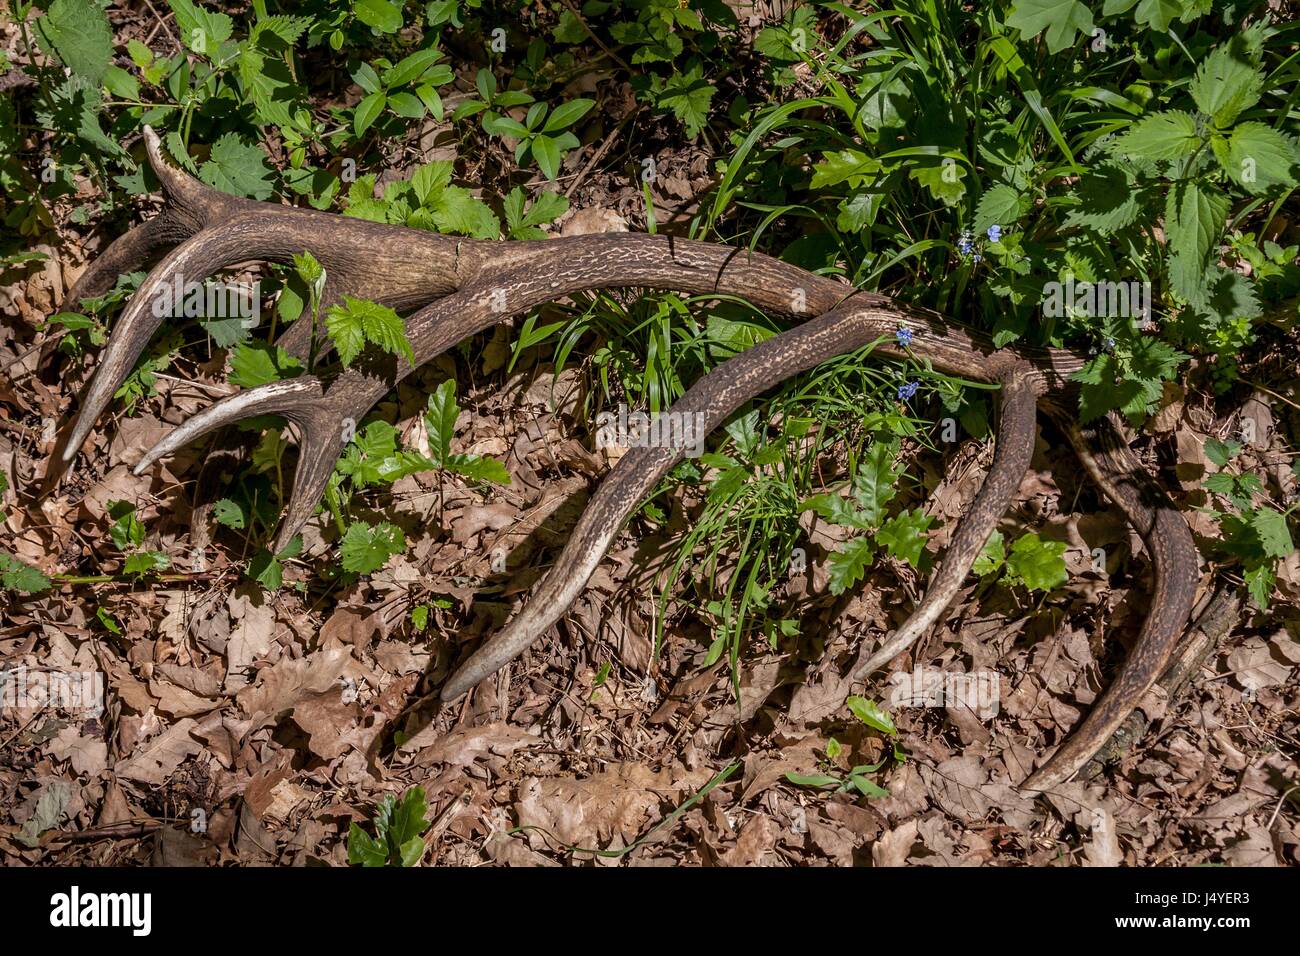 Red deer antler (Cervus elaphus) in the forest Stock Photo